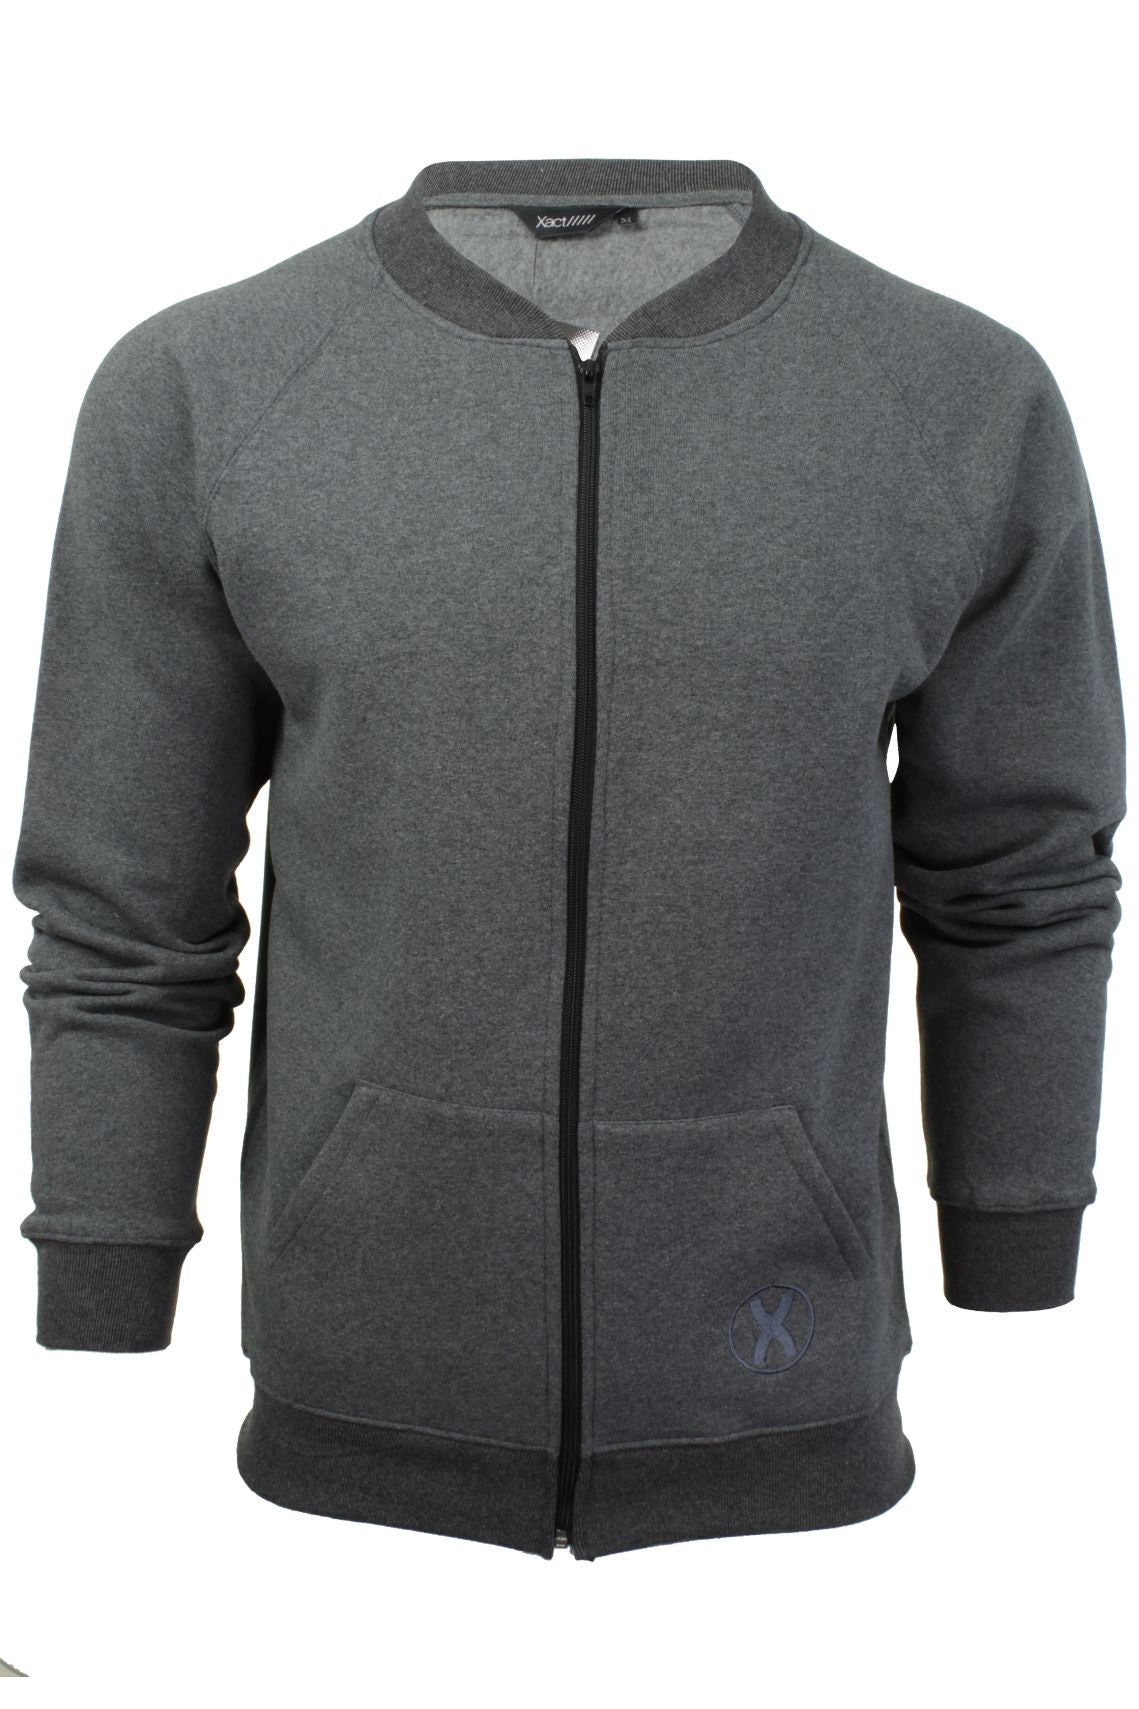 Mens Zip Through Sweatshirt Jumper by Xact Long Sleeved (Dark Grey)-Main Image